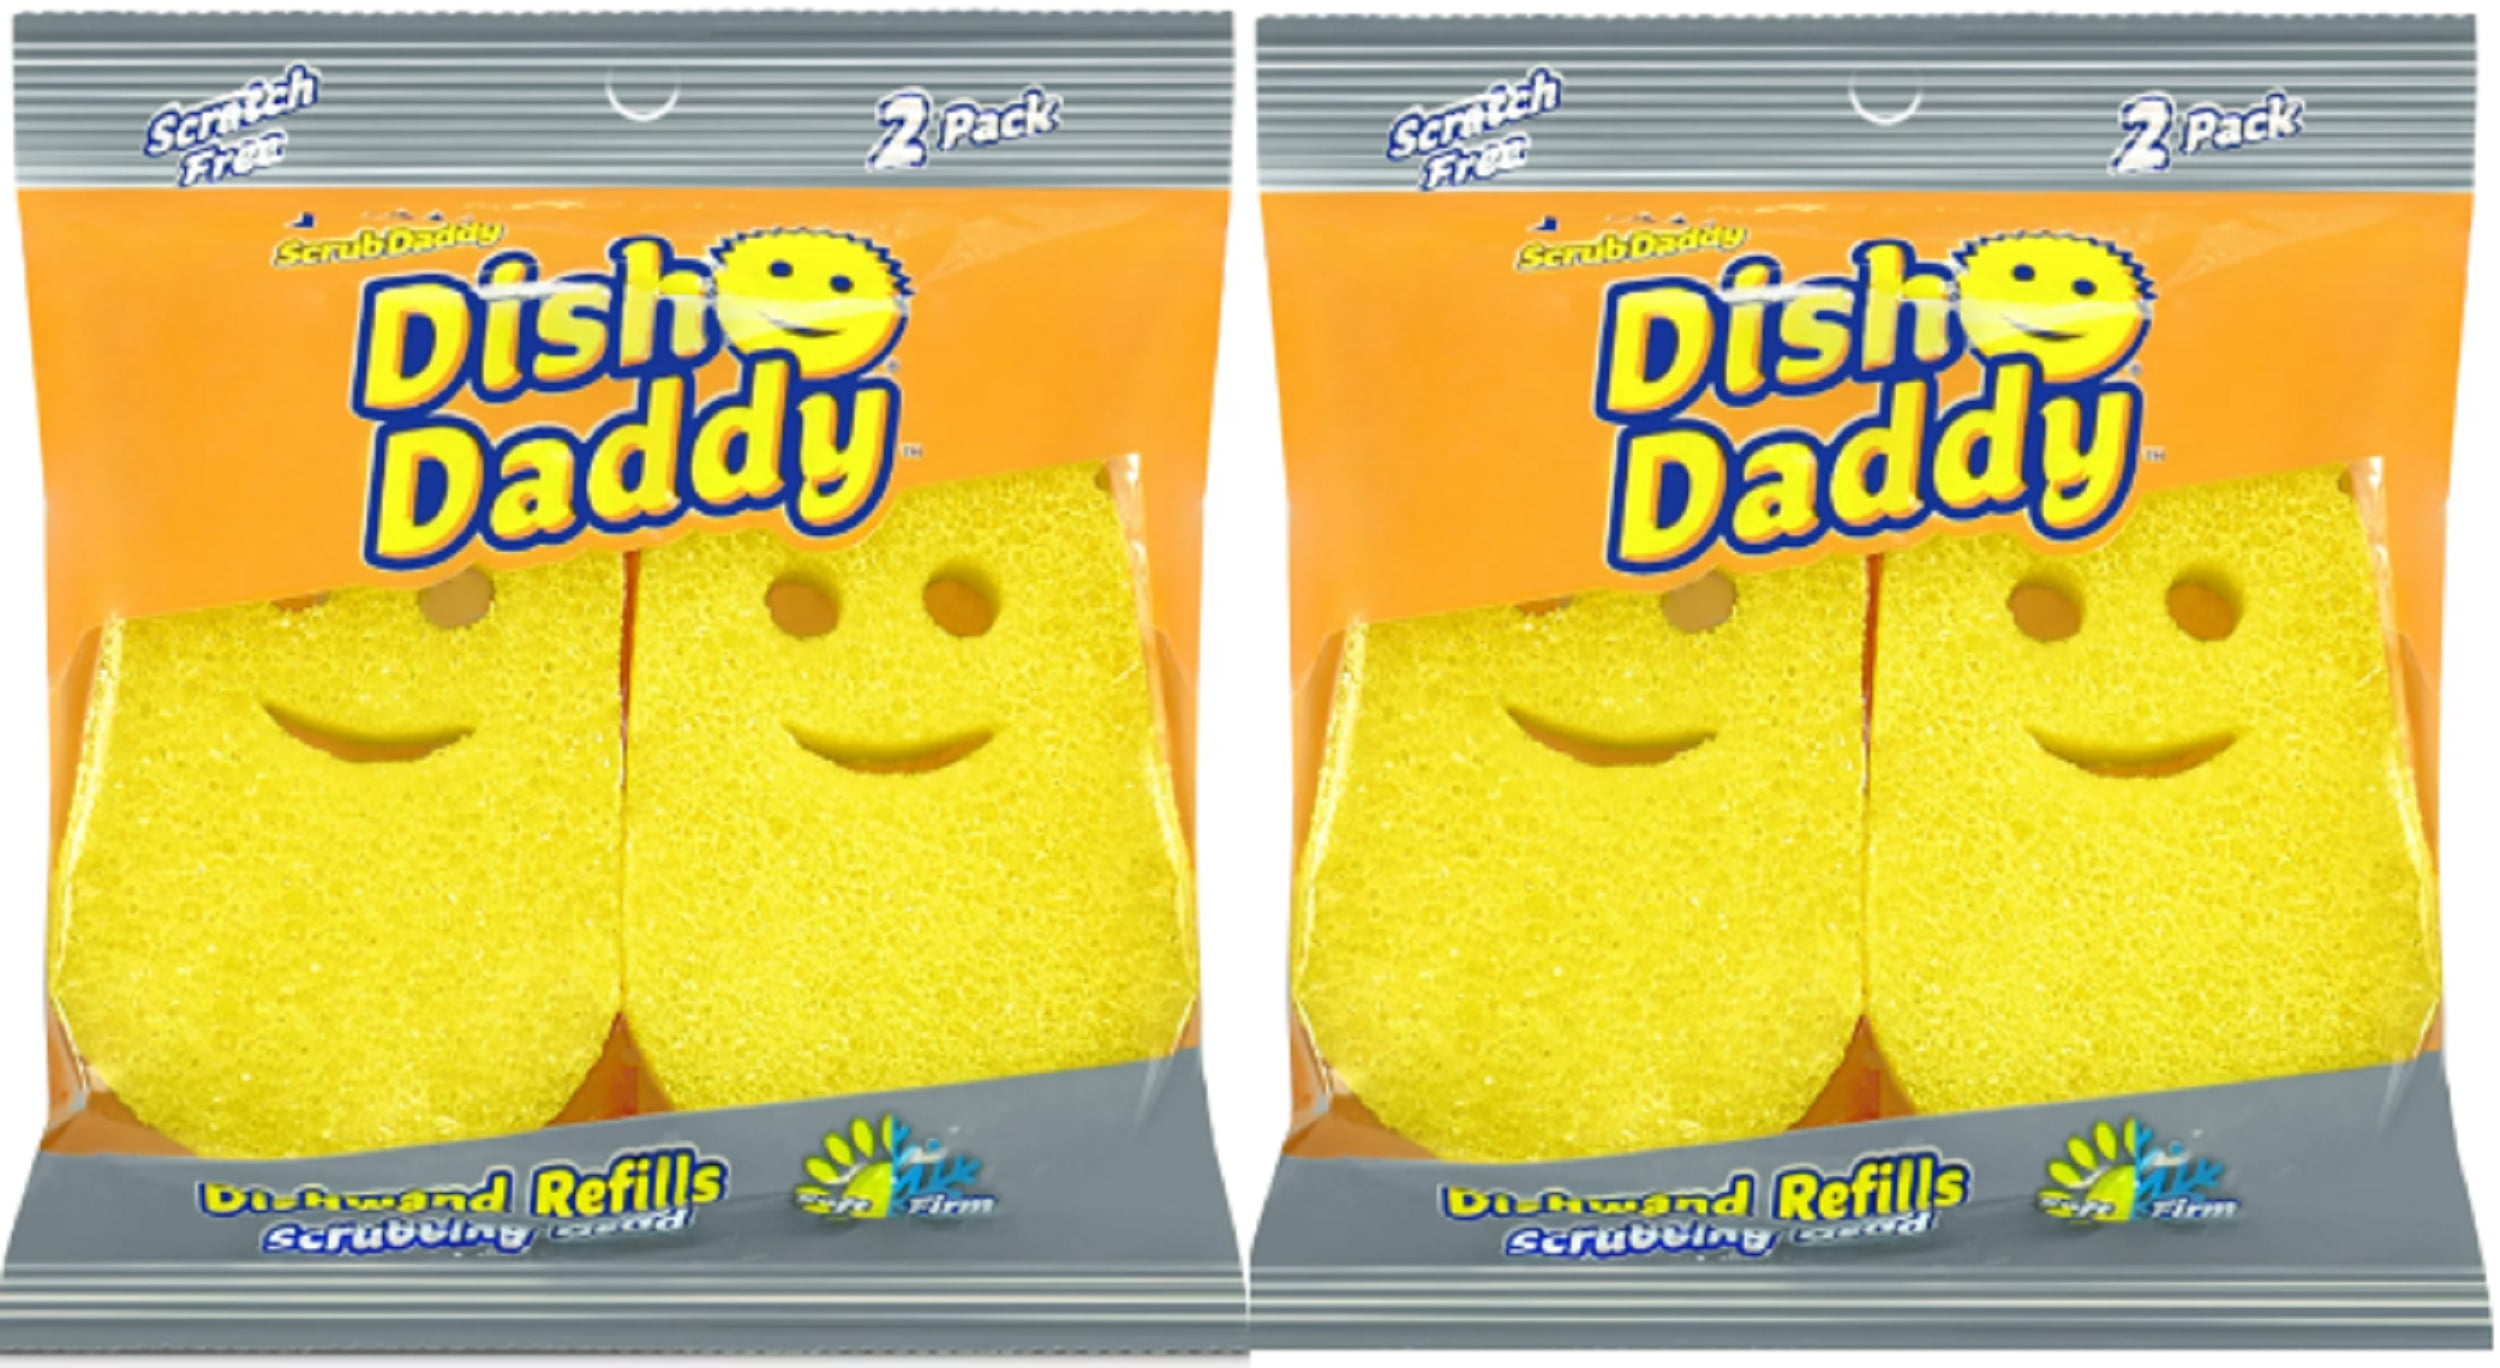 Dish Daddy – Scrub Daddy Smile Shop